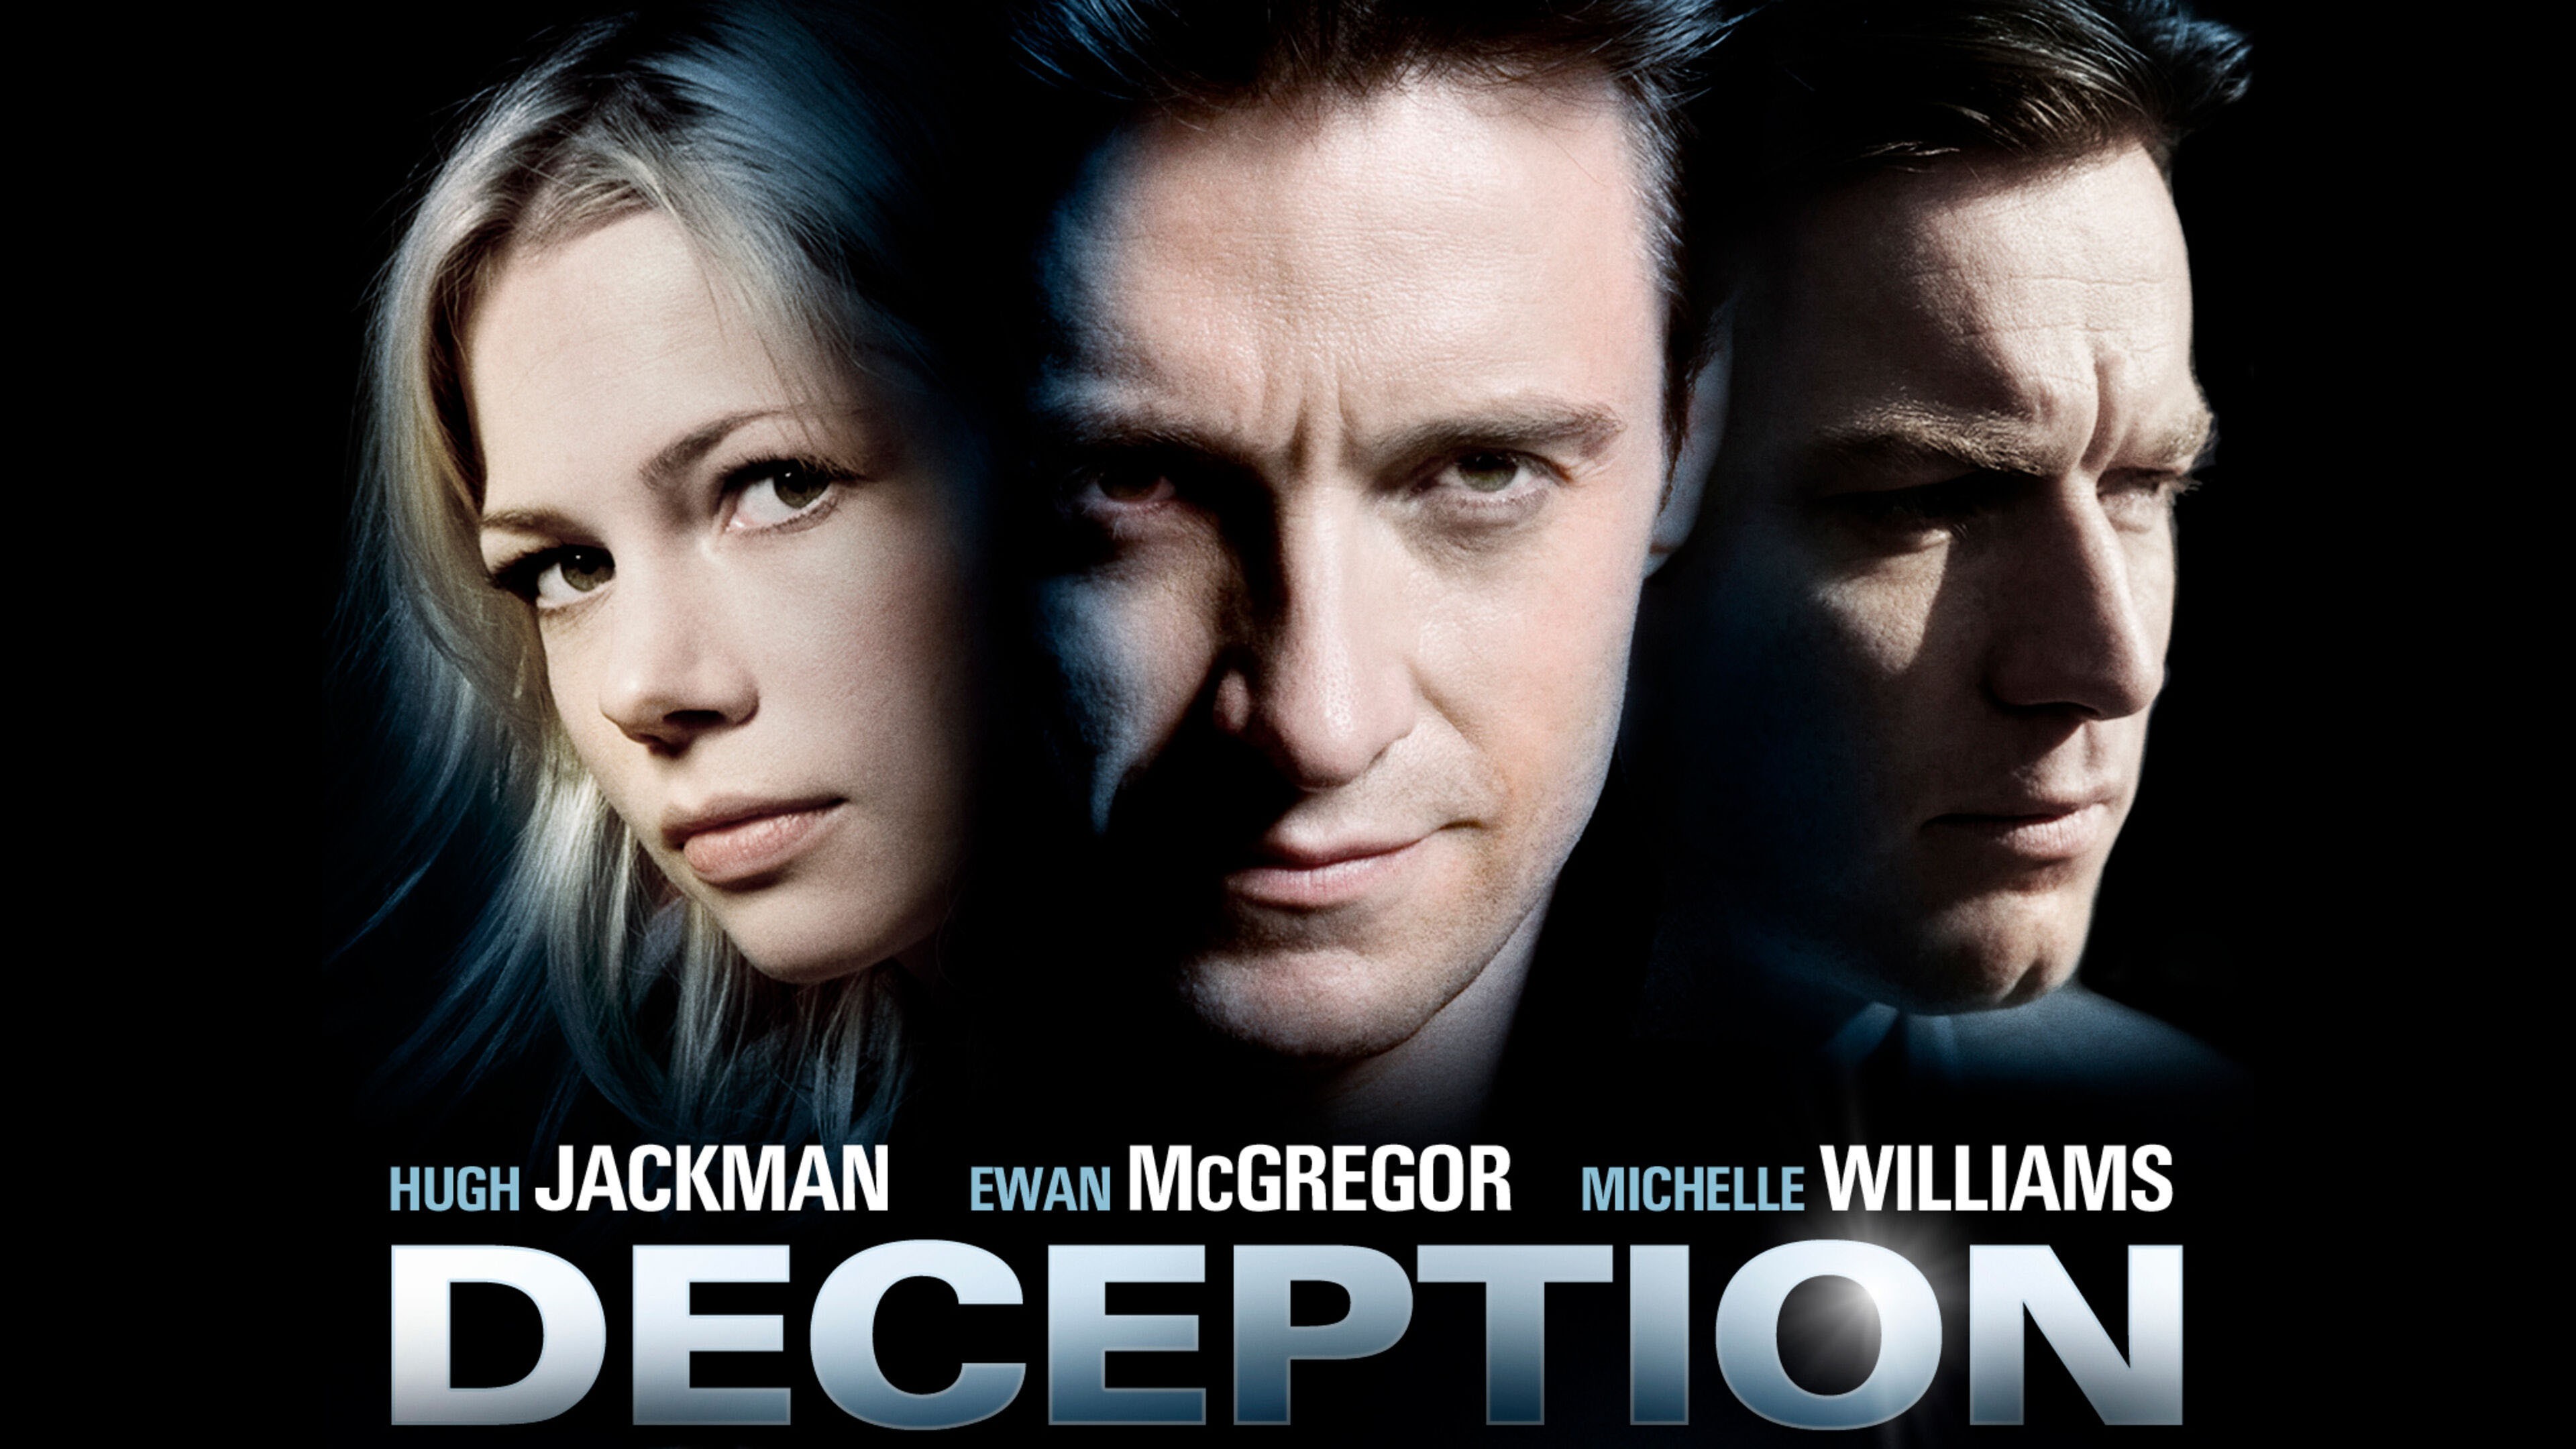 Watch Recipe For Deception Season 1 Episode 2 Online - Stream TV On Demand